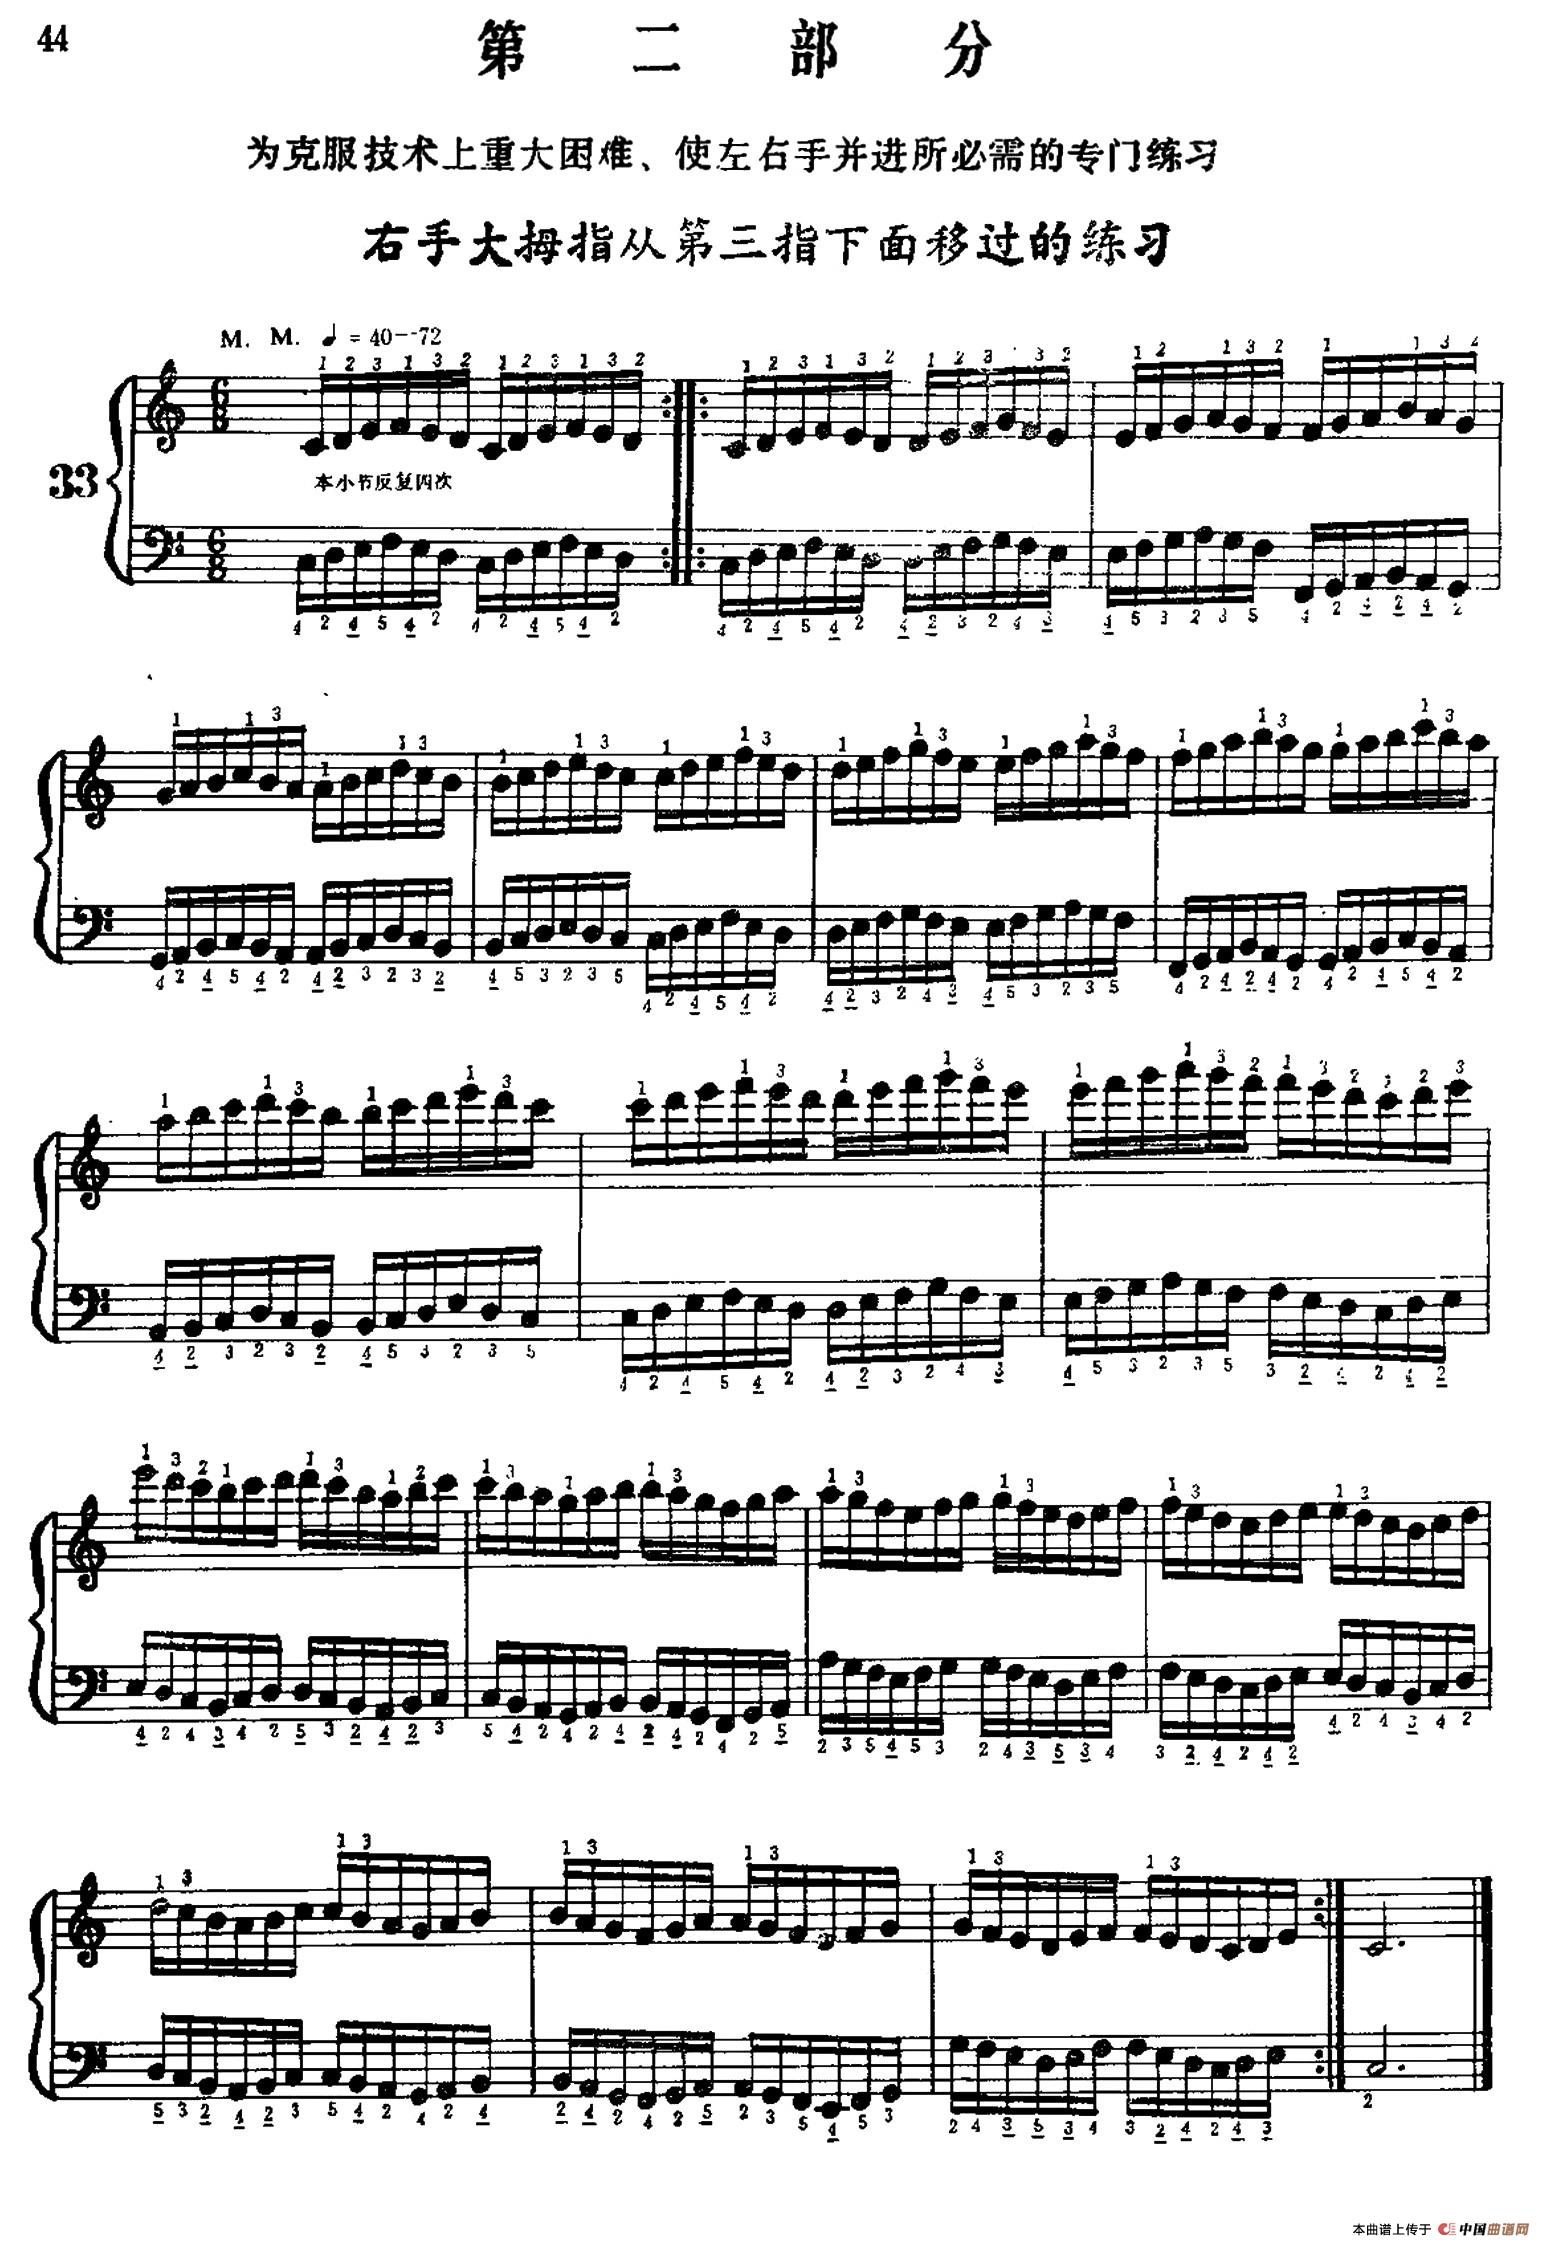 手风琴手指练习 第二部分(右手大拇指从第三指下面移过的练习)(1)